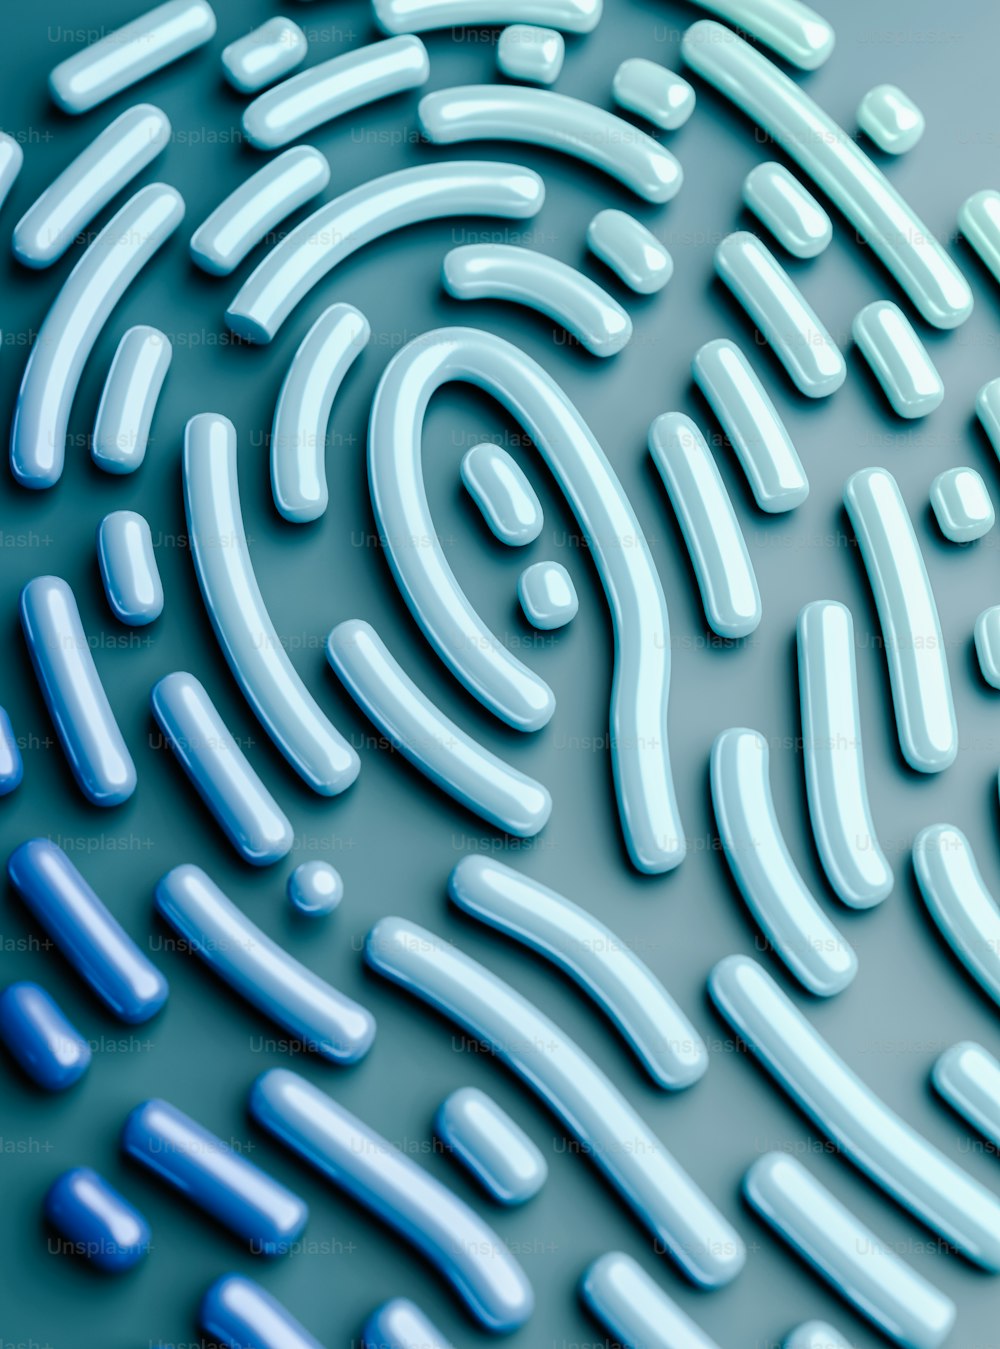 un primo piano di un'impronta digitale su una superficie blu